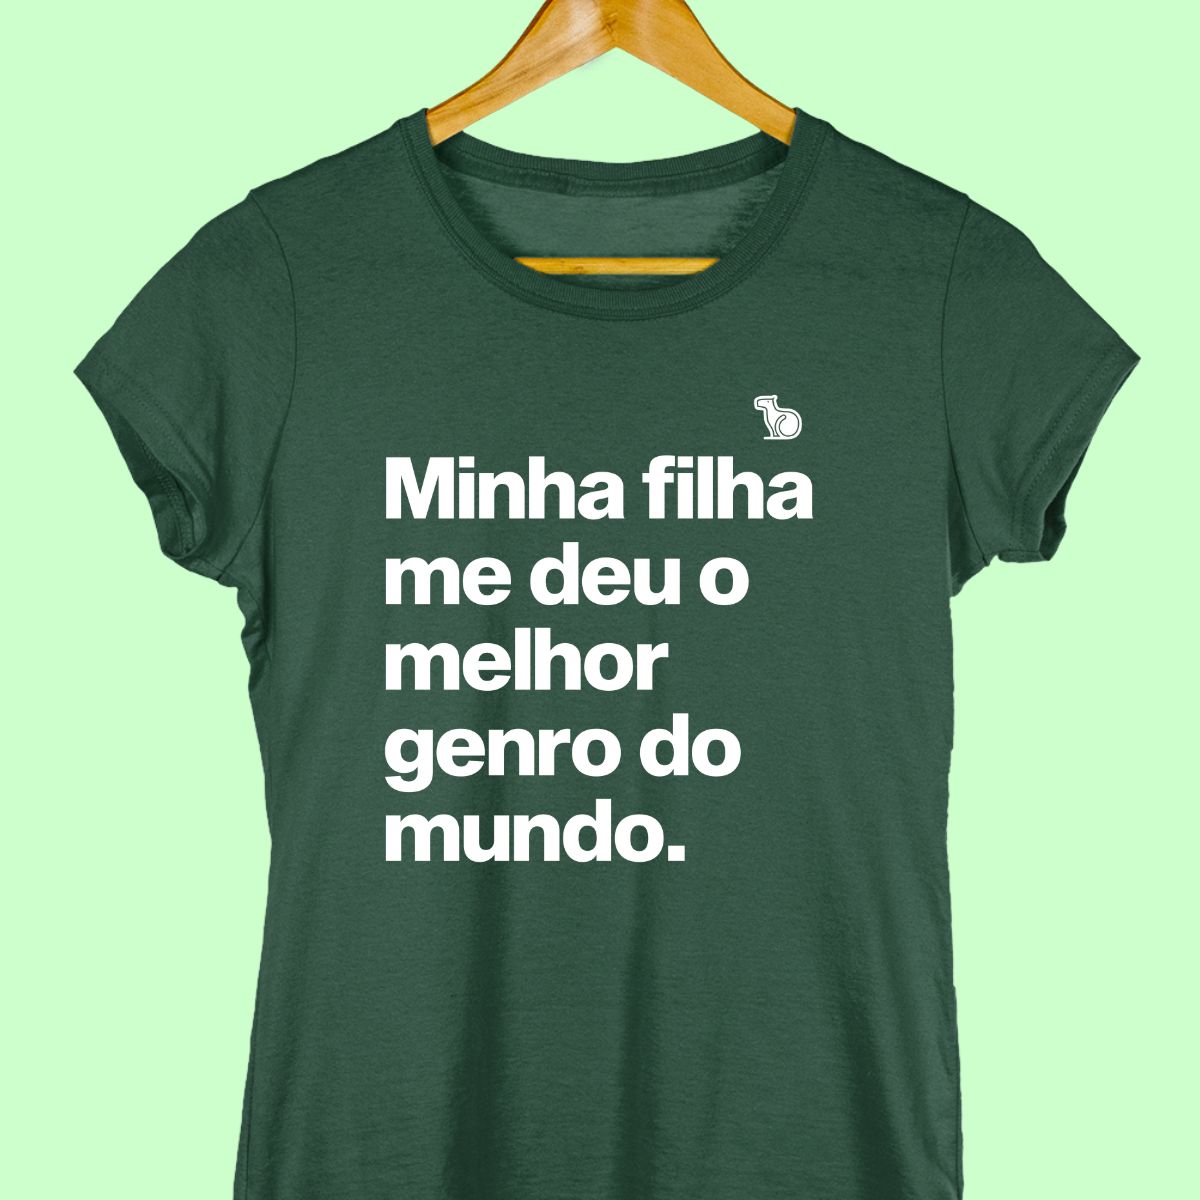 Imagem da Camiseta Feminina na cor verde com a frase "Minha filha me deu o melhor genro do mundo".